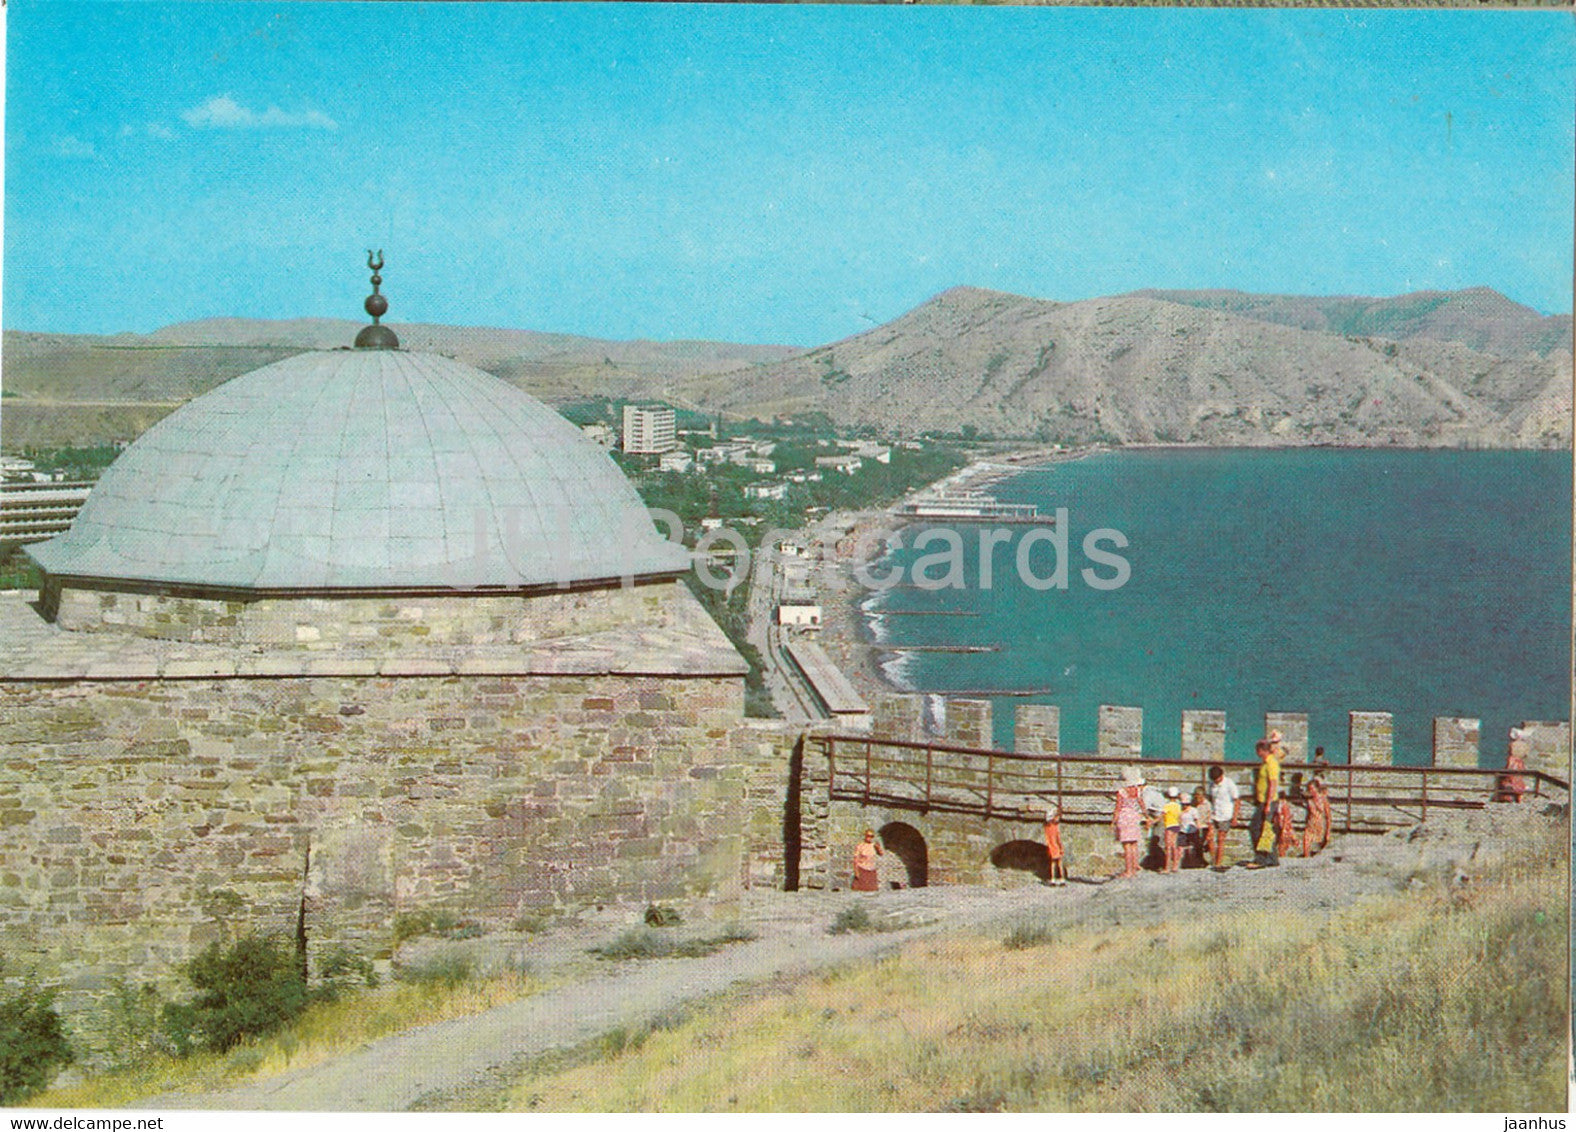 Crimea - Sudak - Genoese fortress - postal stationery - 1981 - Ukraine USSR - unused - JH Postcards